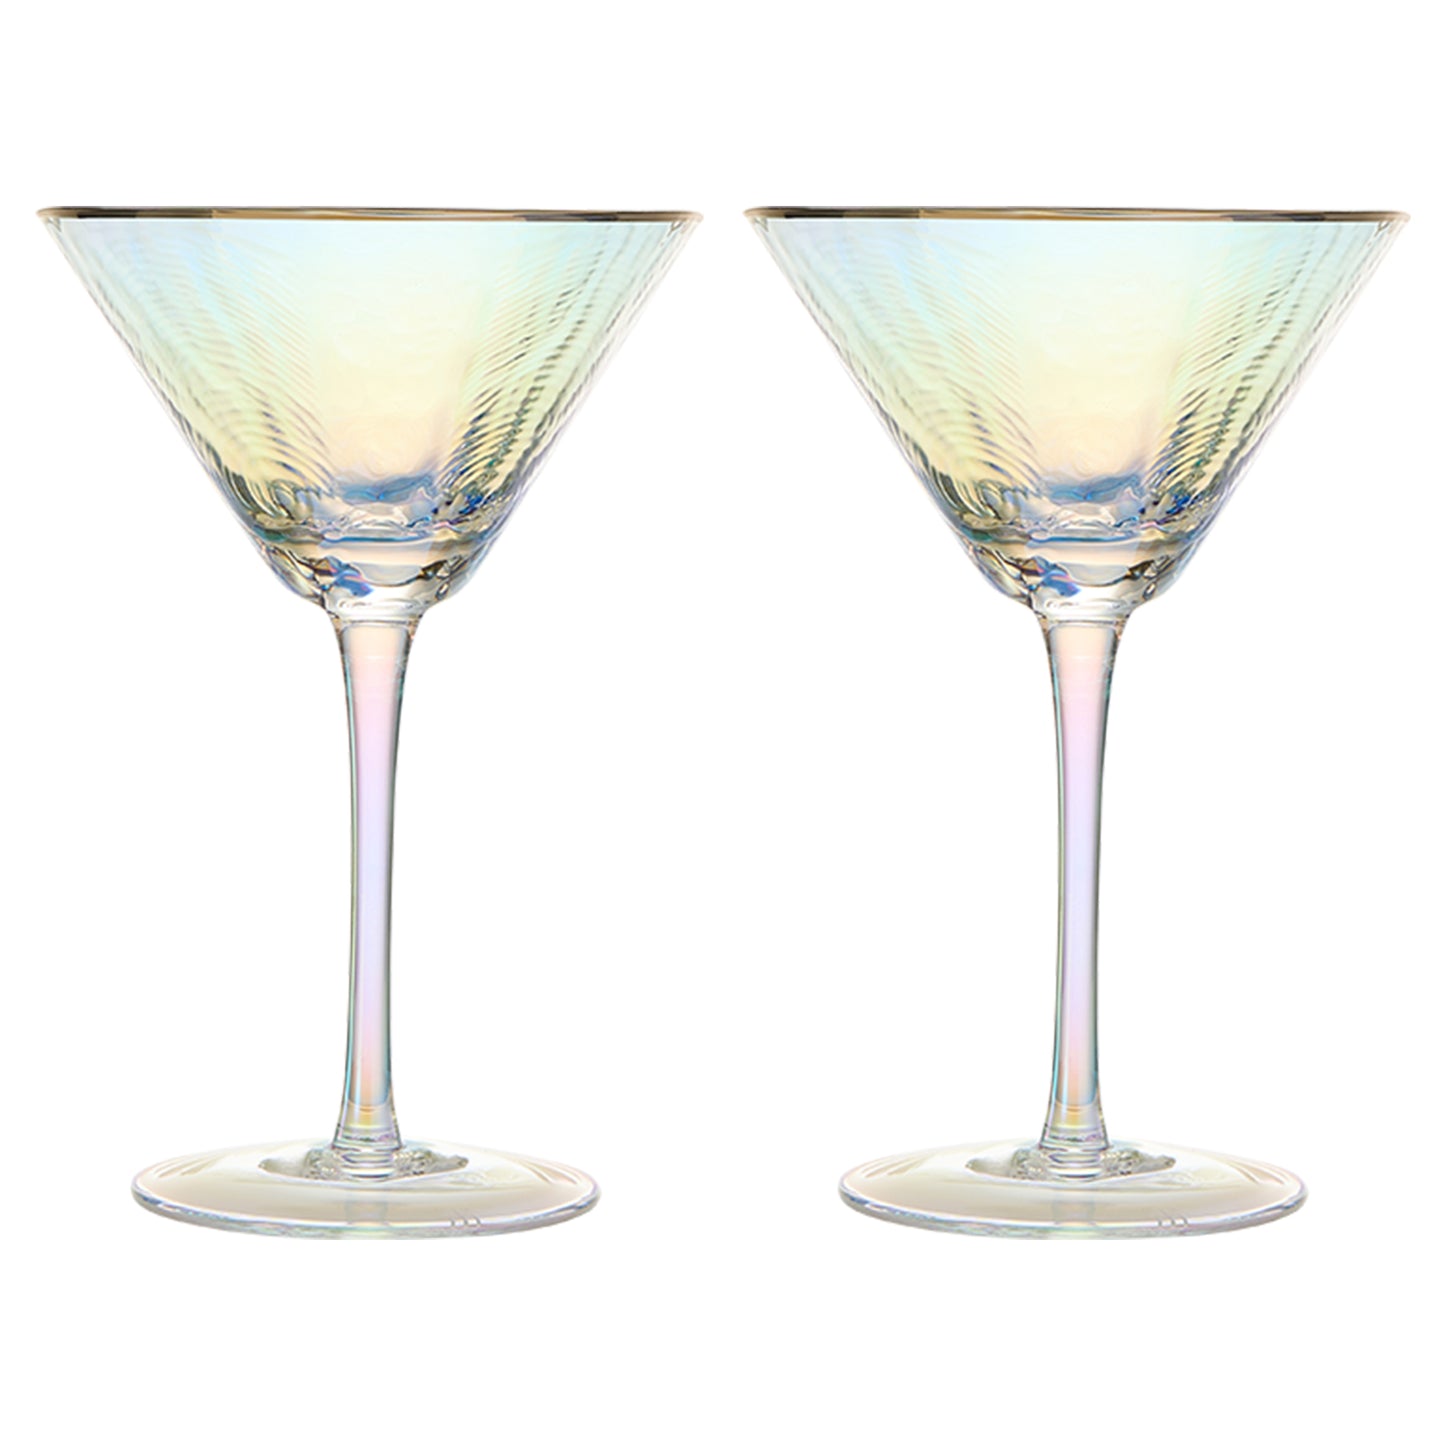 Dulce Martini Glassware, Set of 2